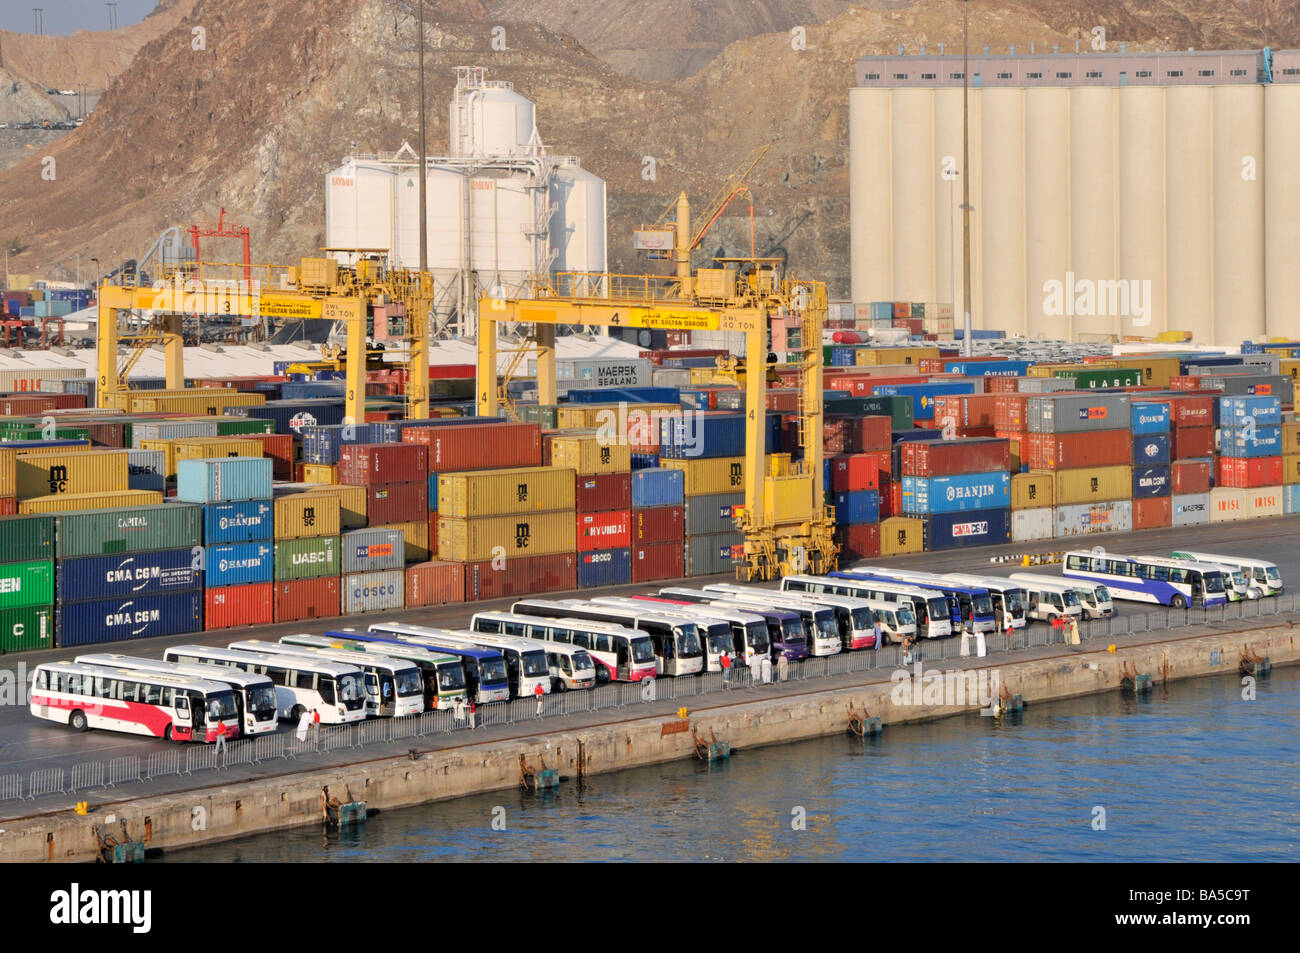 Des autocars d'excursion attendent les passagers des bateaux de croisière dans des conteneurs commerciaux Port Sultan Qaboos Muttrah Muscat Oman dans le golfe d'Oman Moyen-Orient Banque D'Images